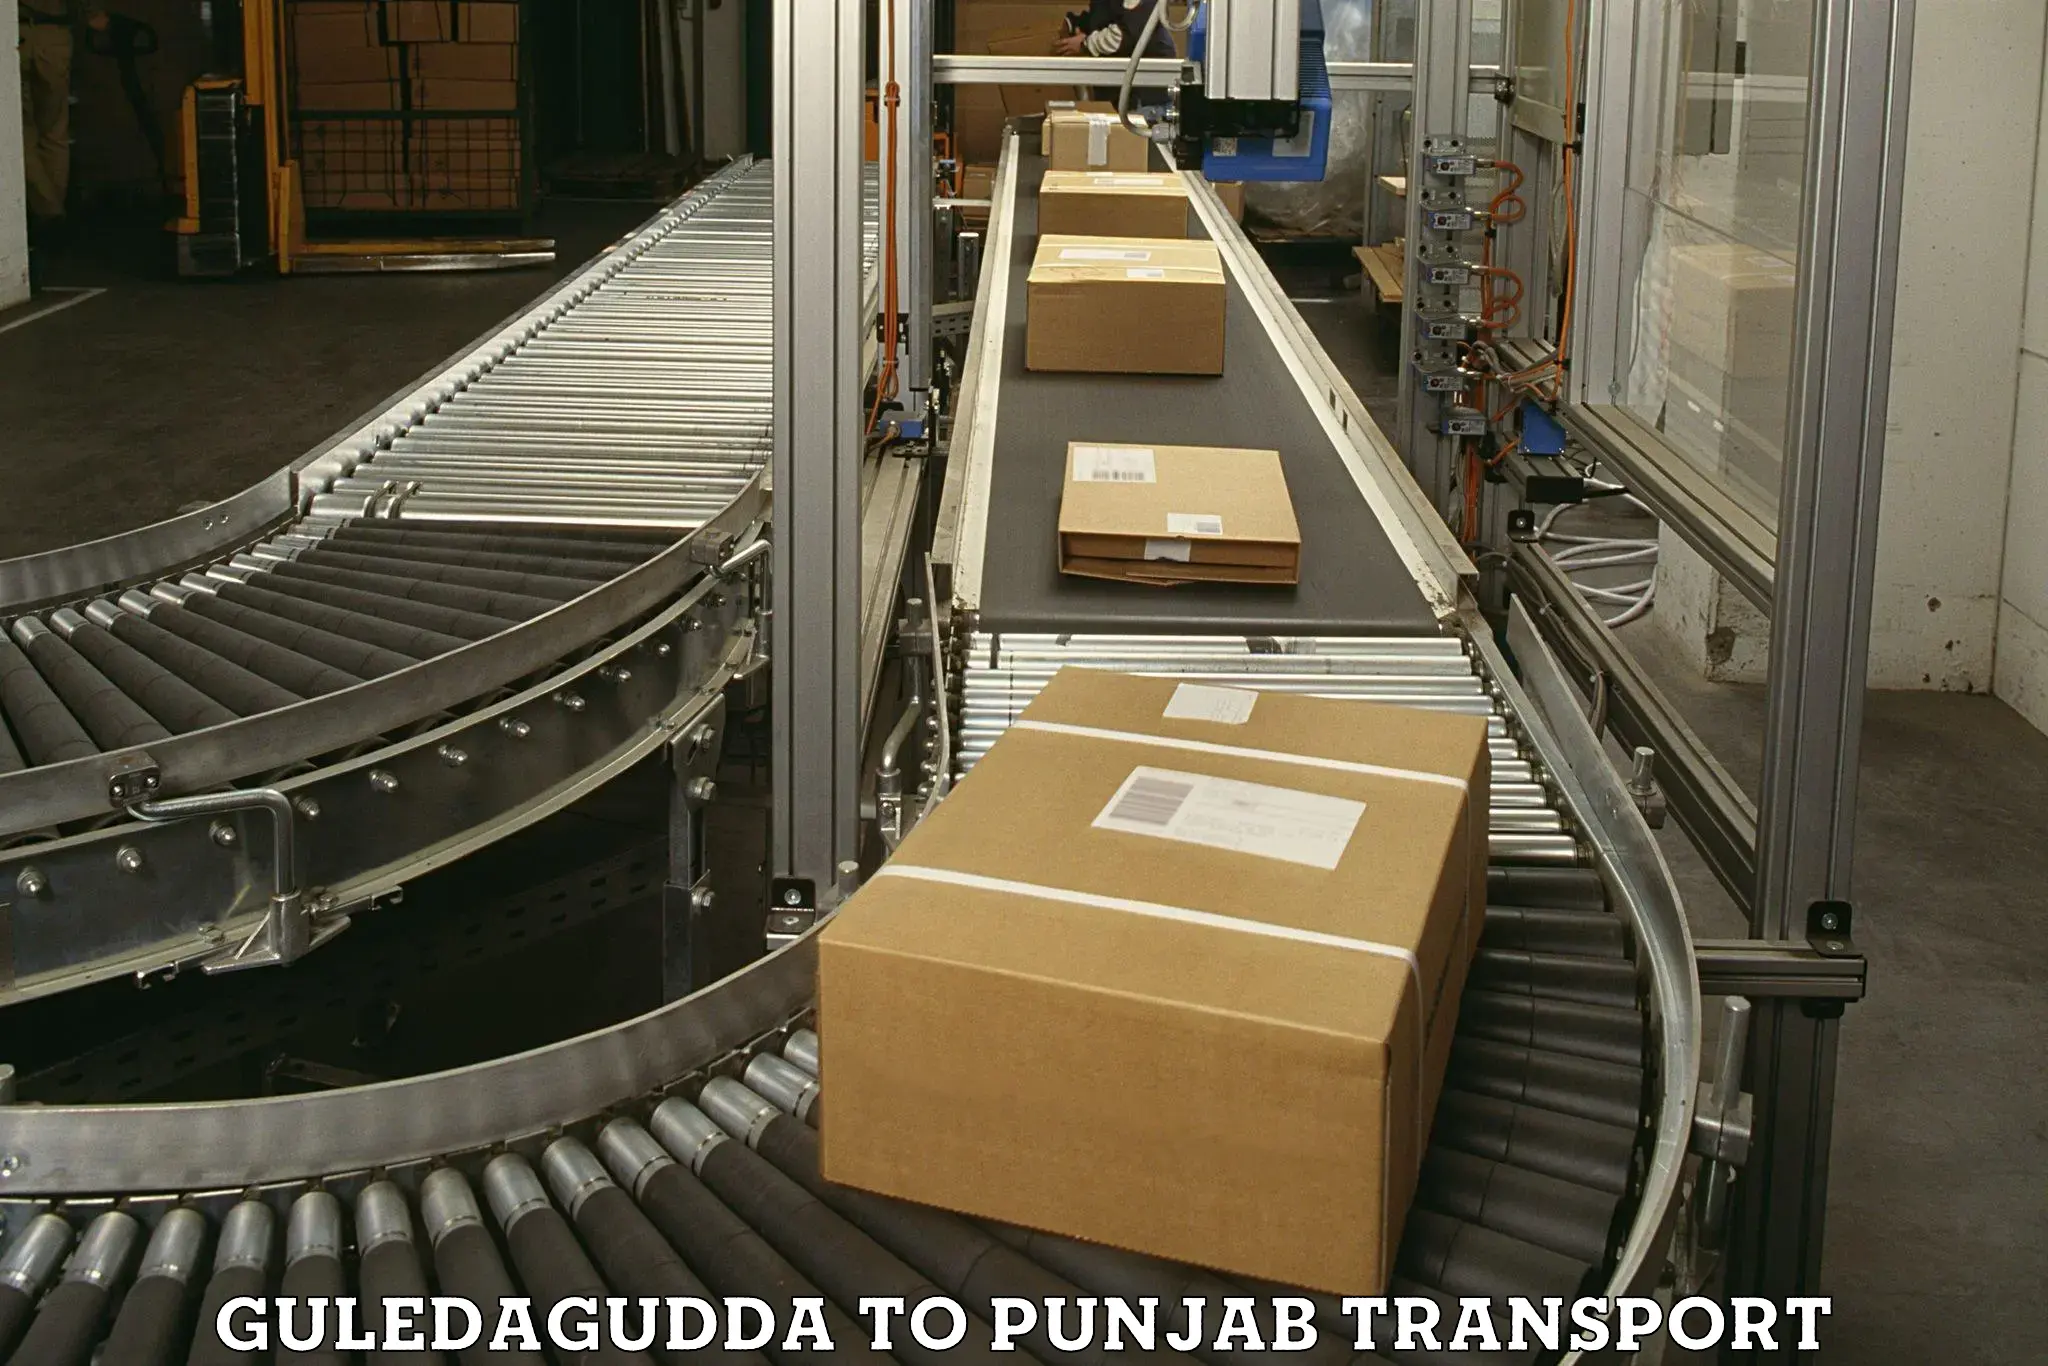 Nationwide transport services Guledagudda to Jalandhar